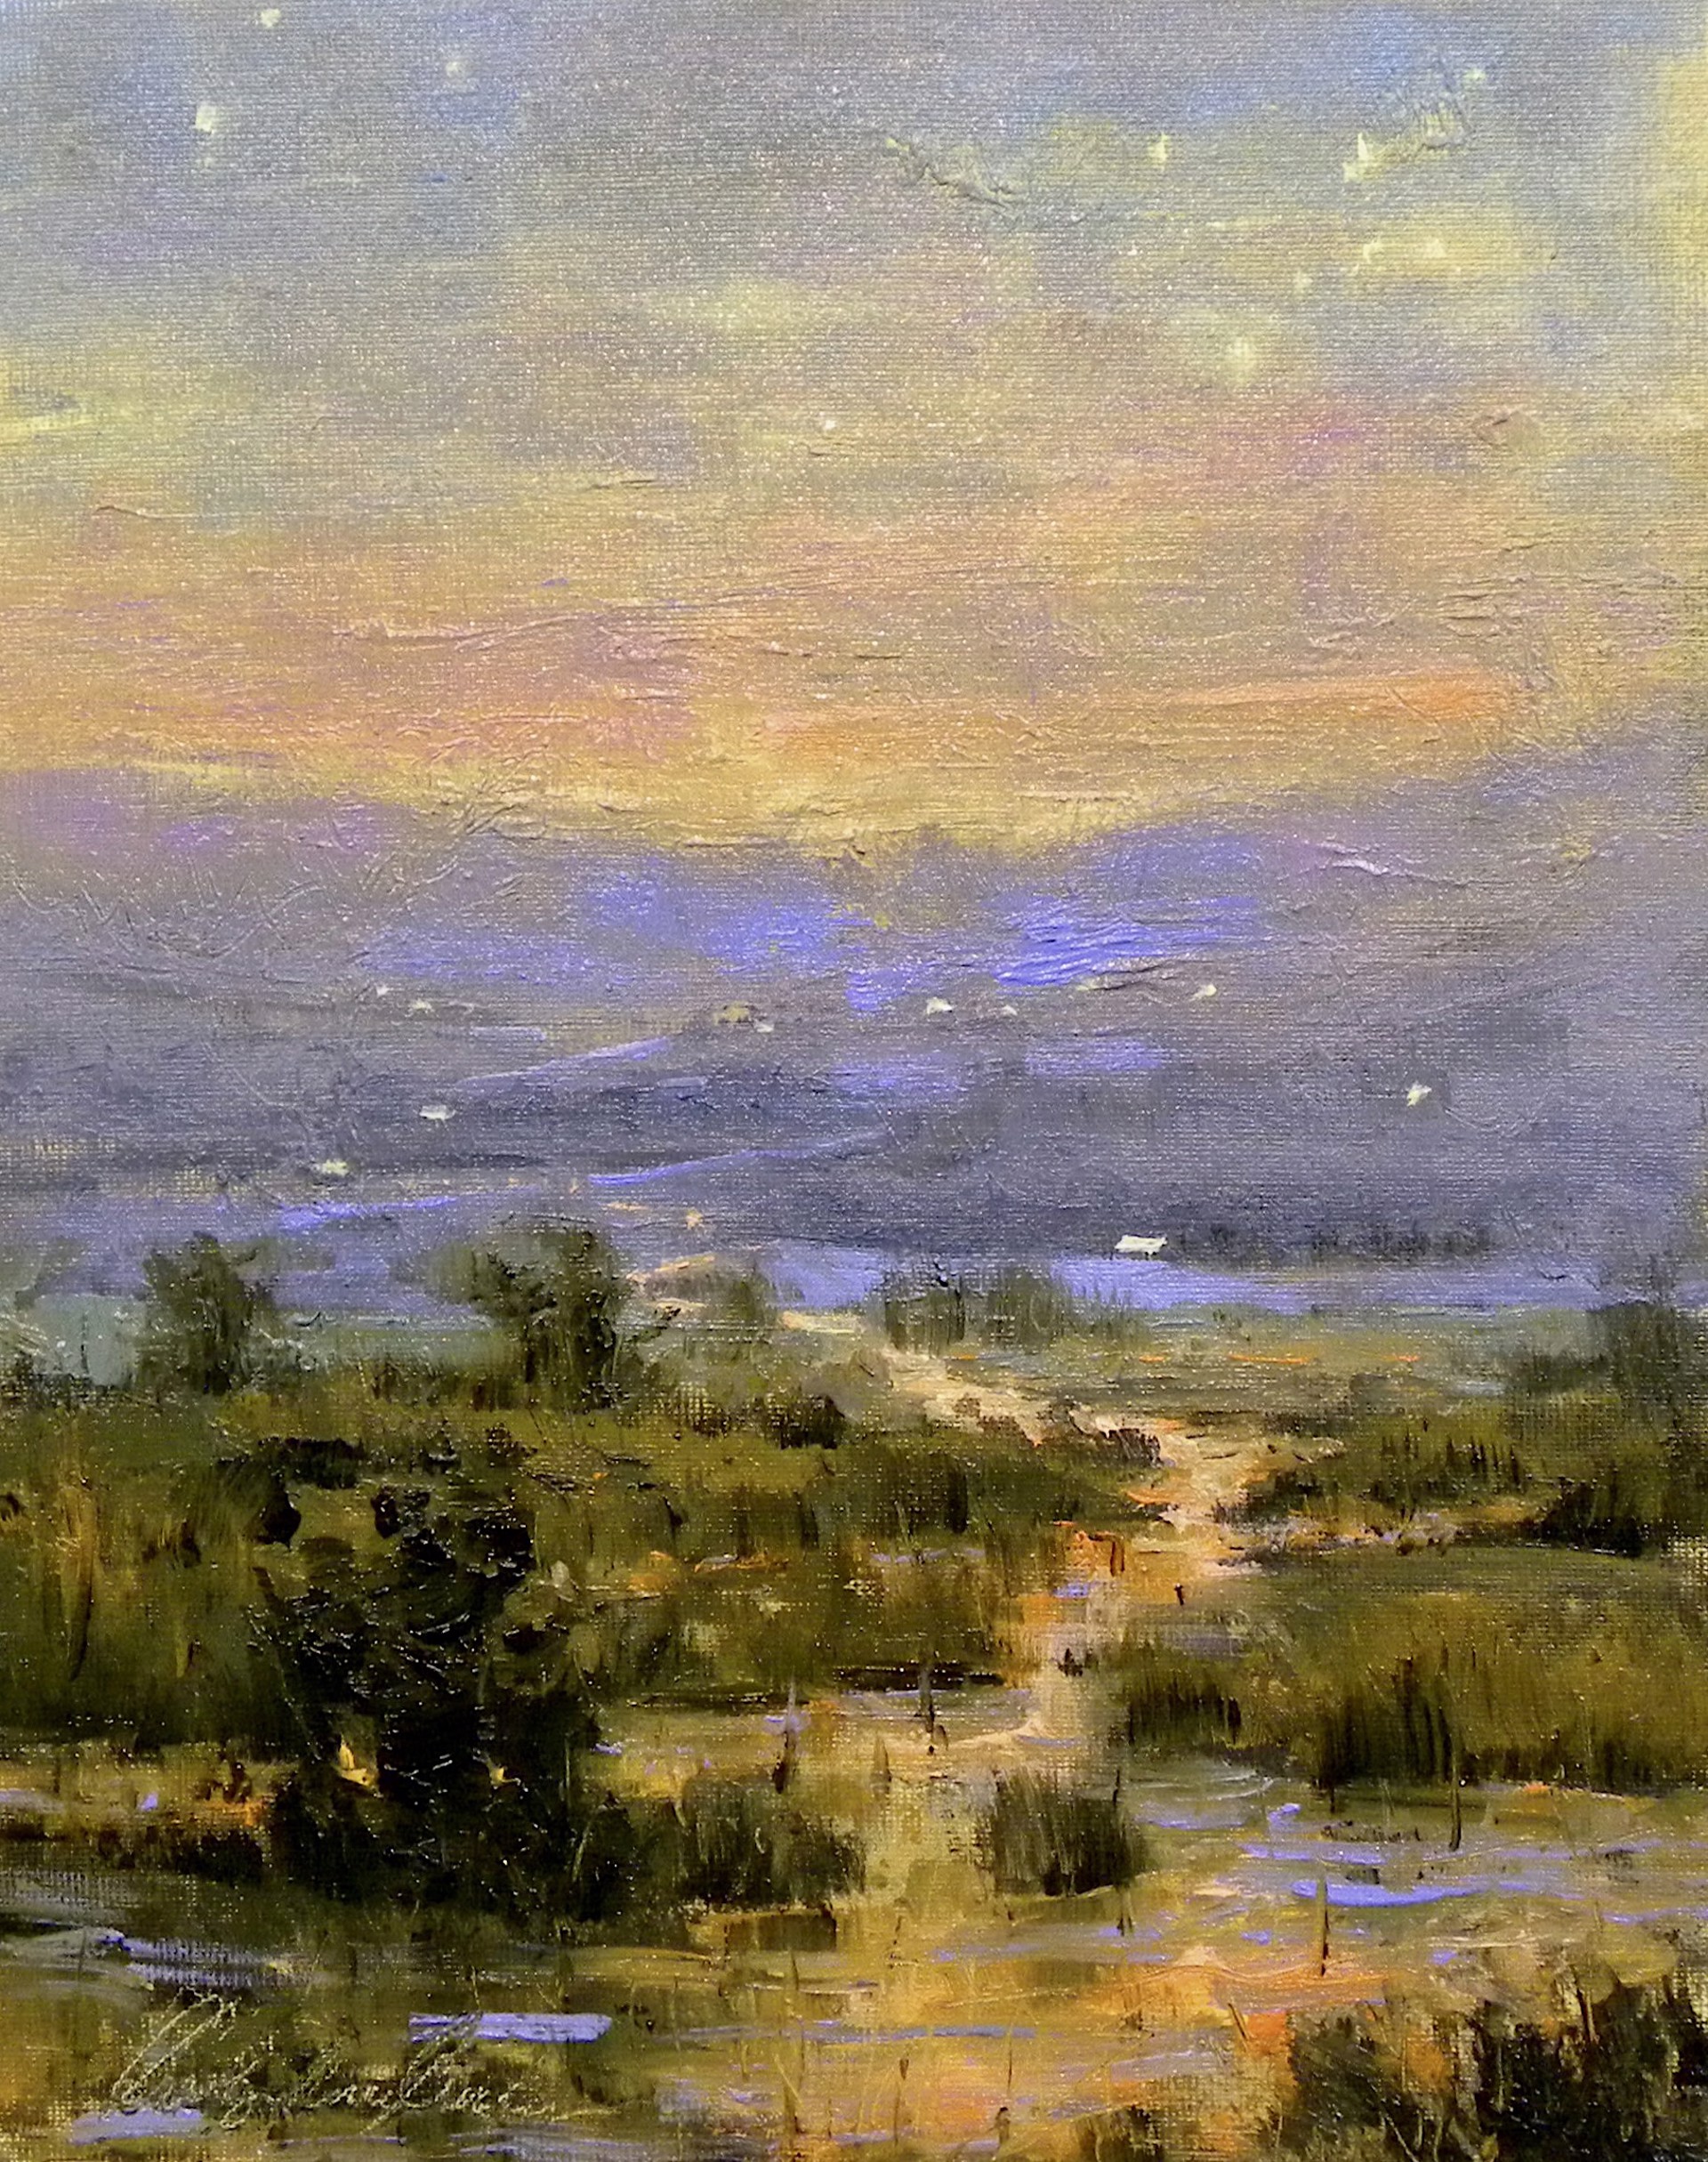 Evening Marsh by Carolyn Crocker (Rue)